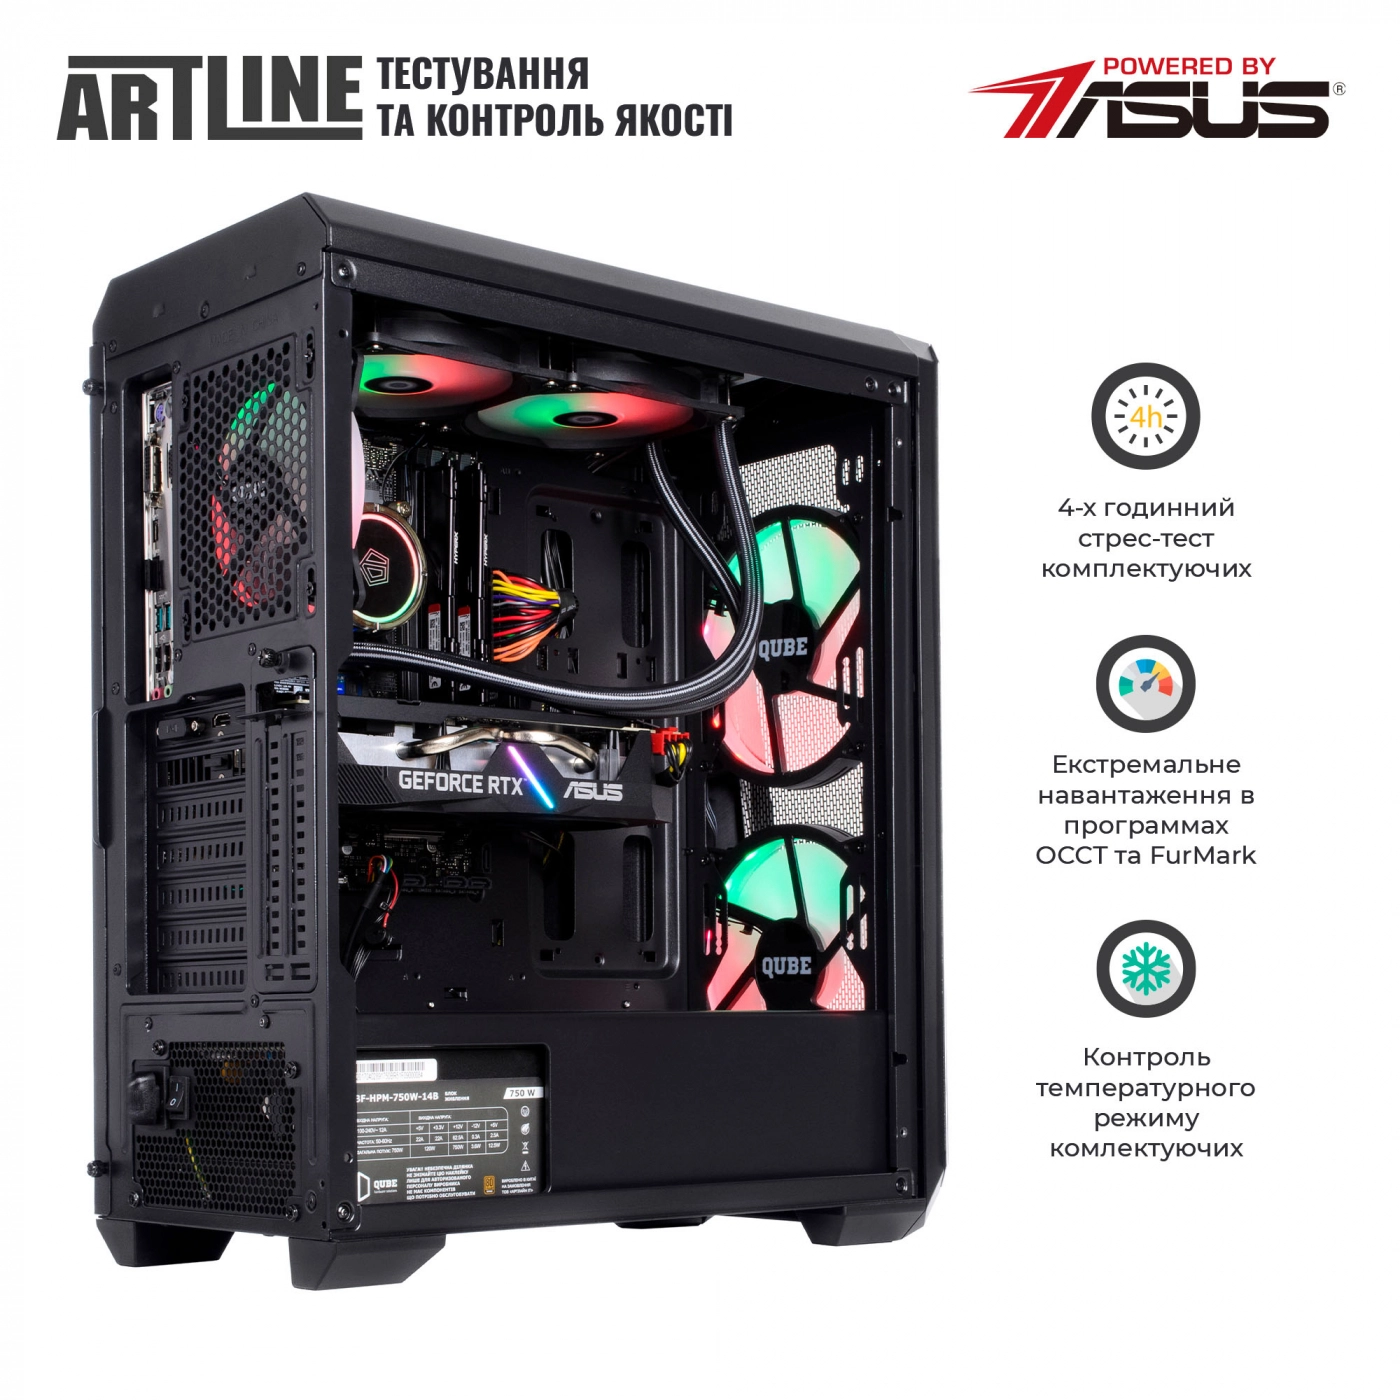 Купить Компьютер ARTLINE Gaming X75v30 - фото 8